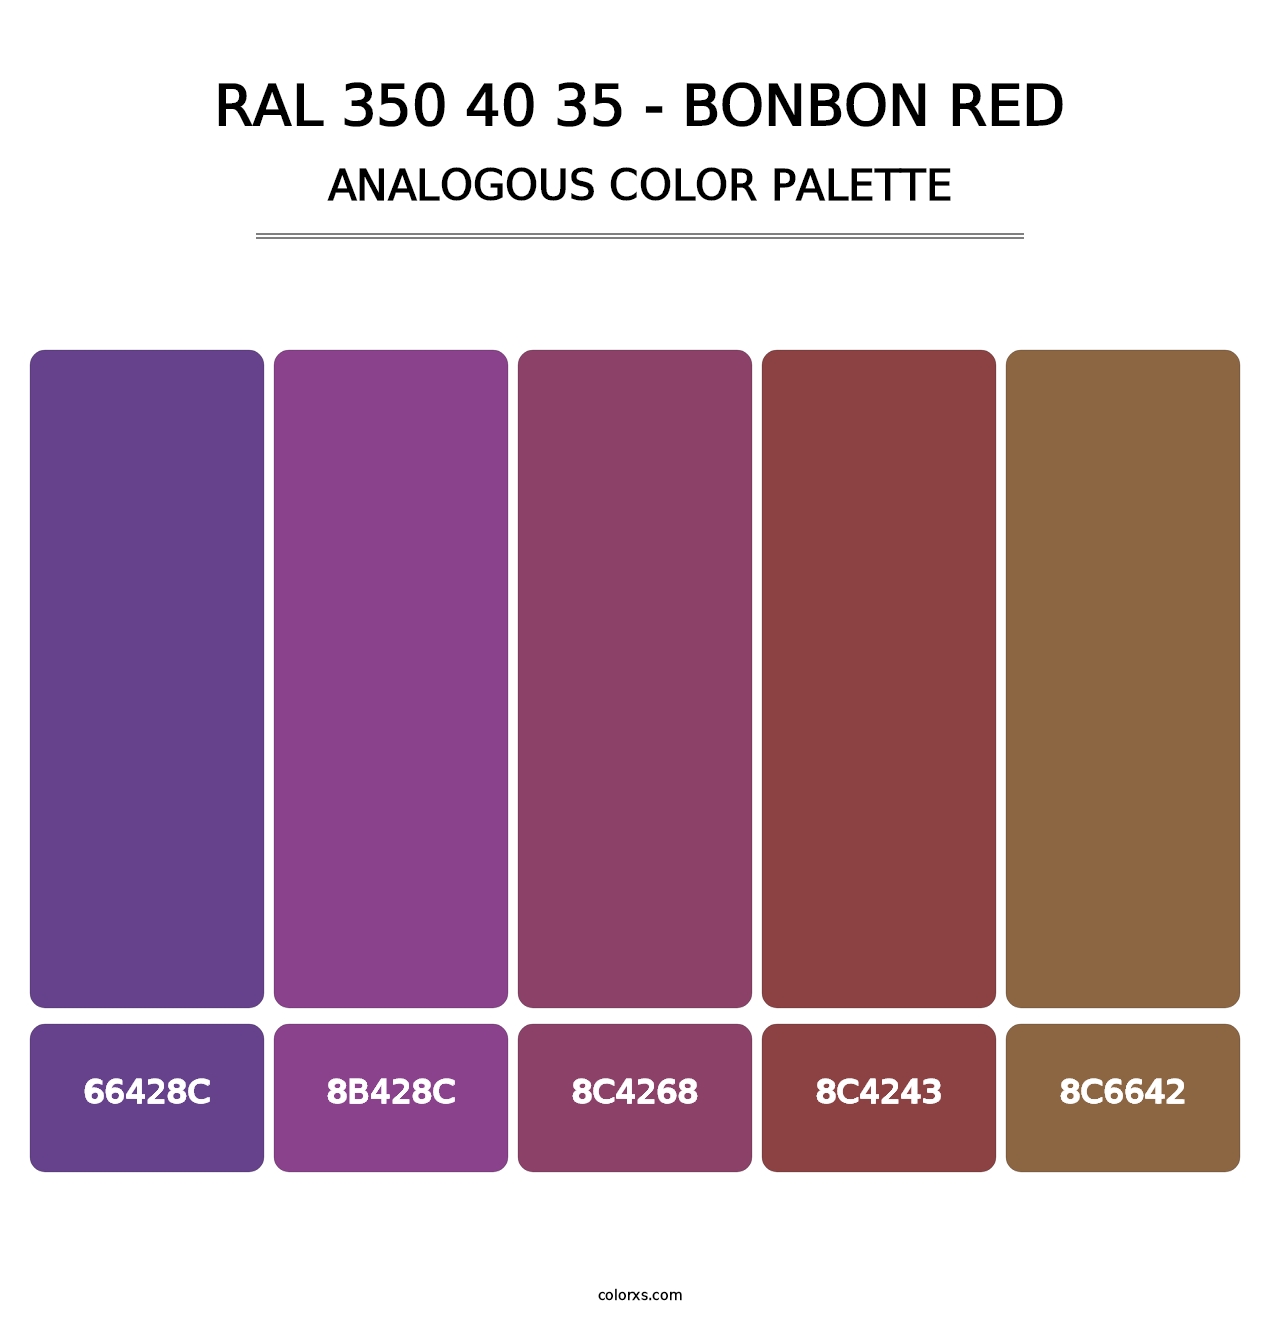 RAL 350 40 35 - Bonbon Red - Analogous Color Palette